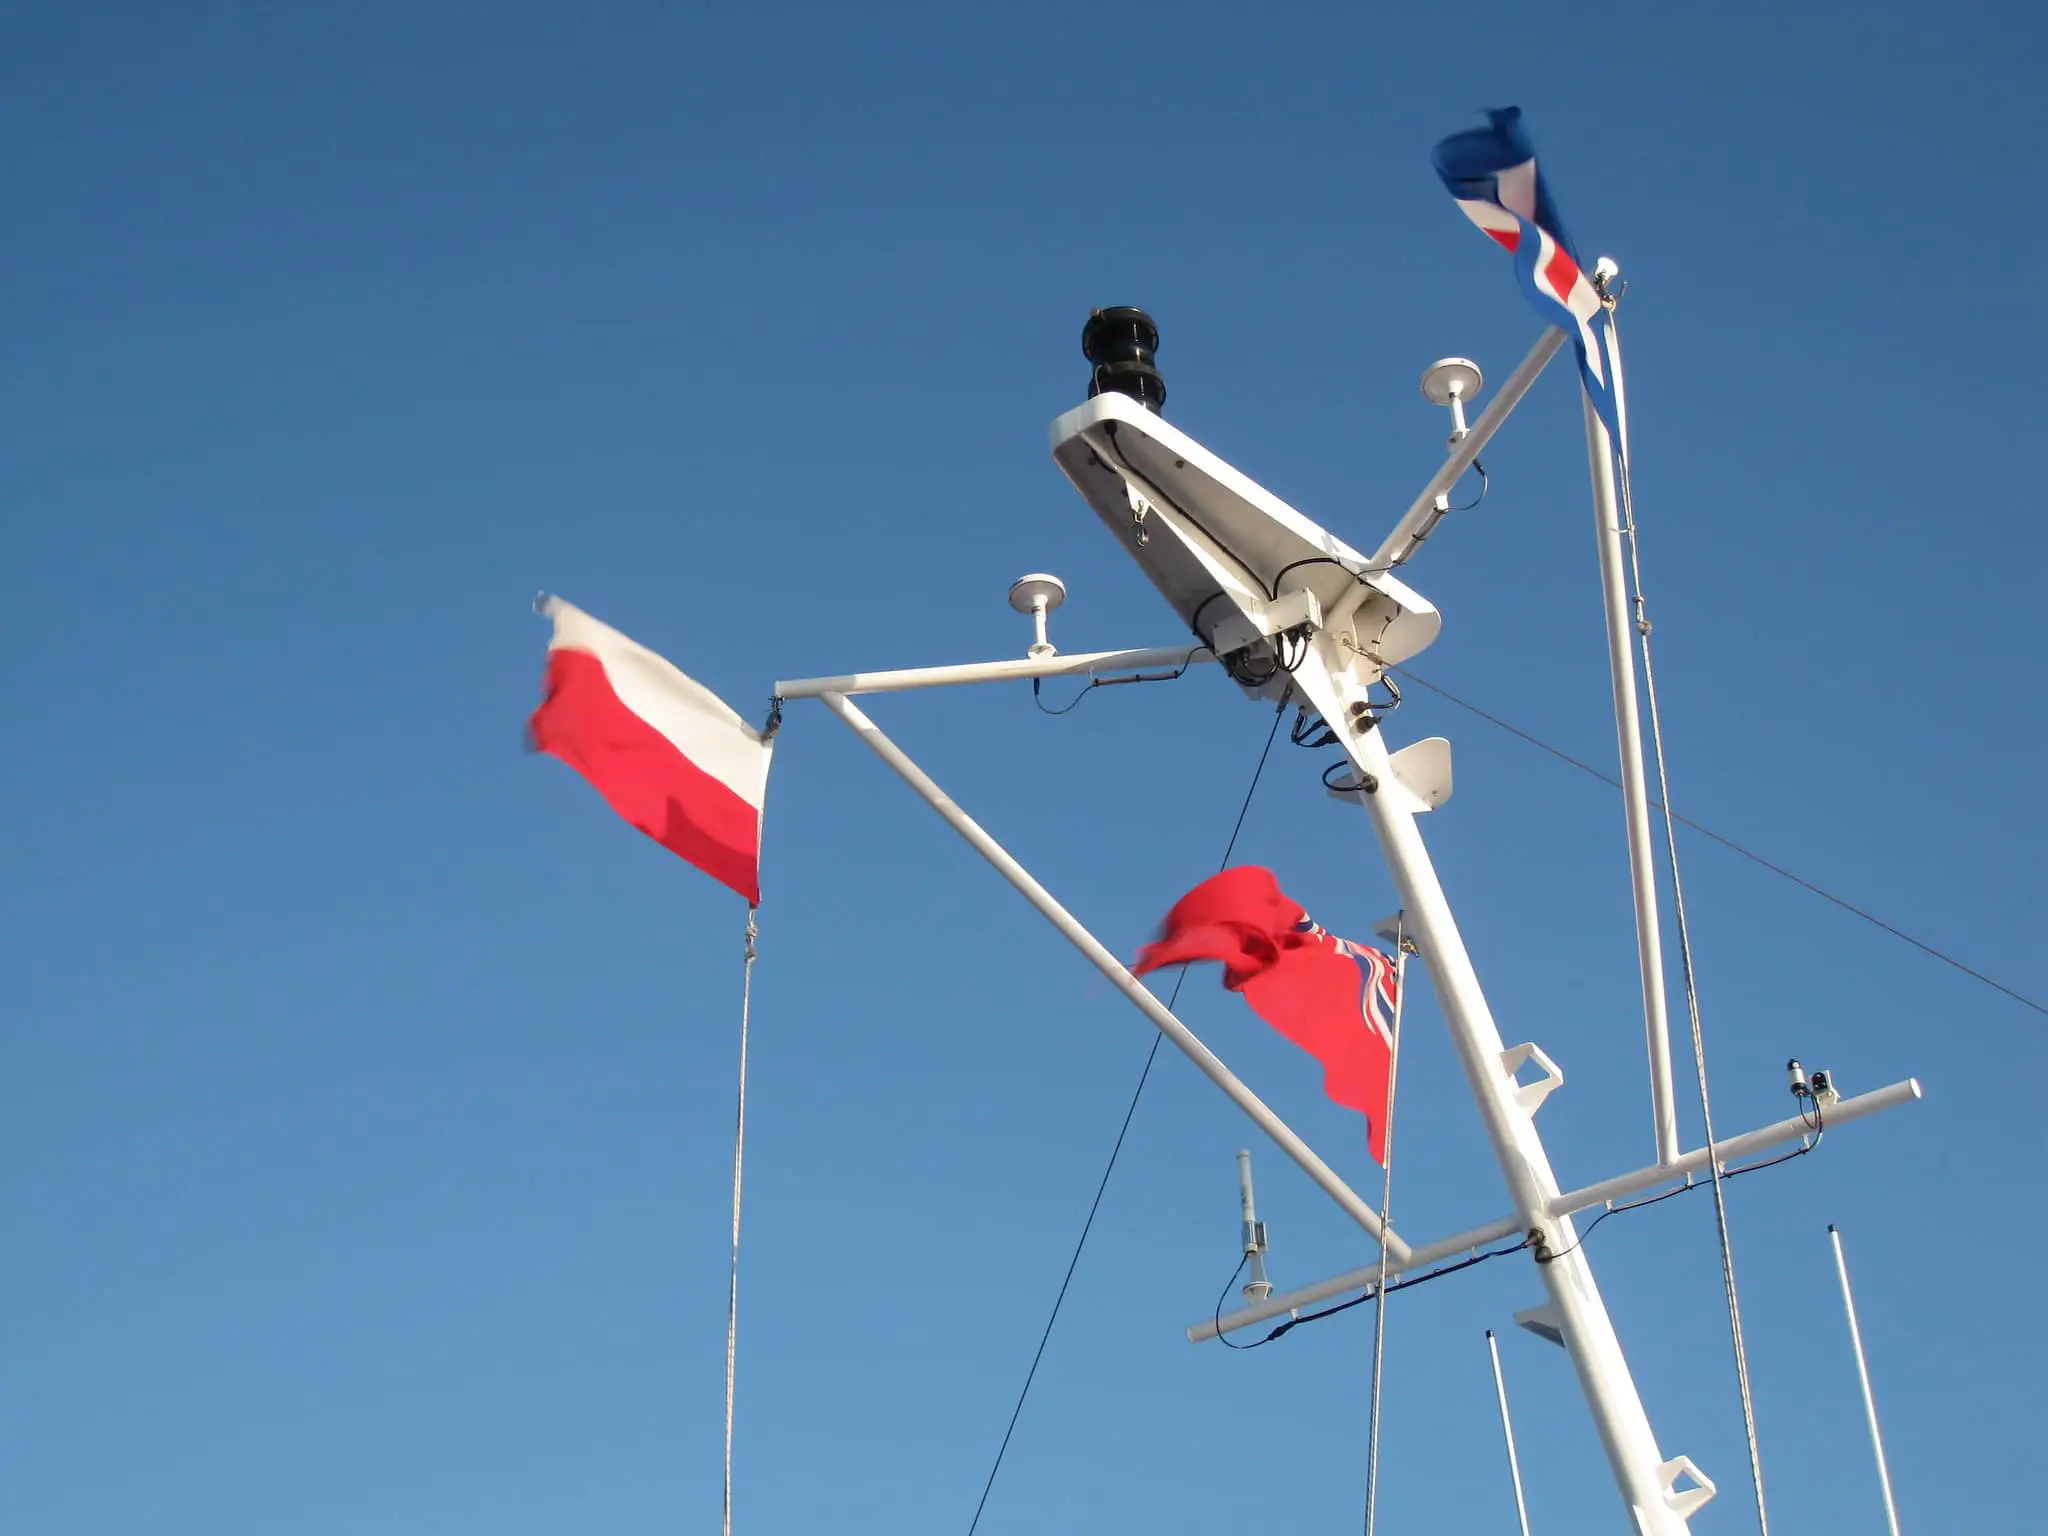 Wightlink catamaran flags